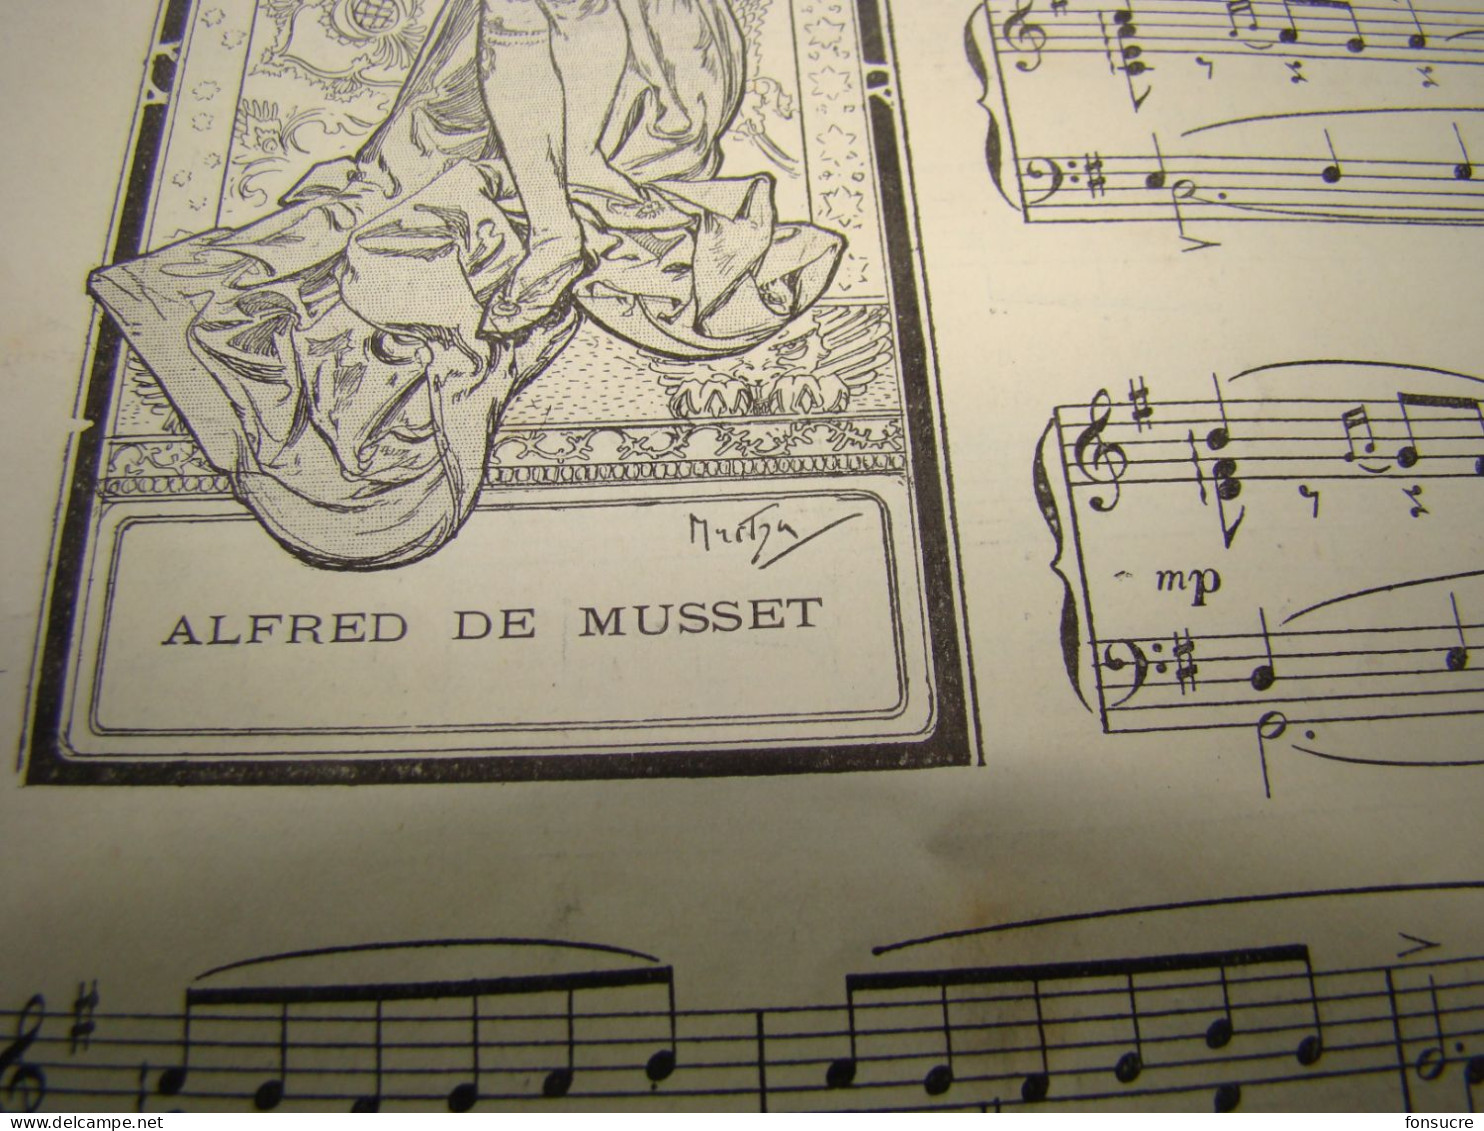 VR20 Ancienne Partition Musique LORENZACCIO Alfred De Musset Dessin Sarah Bernhardt Par A. MUCHA 1896 L'Illustration - Spartiti